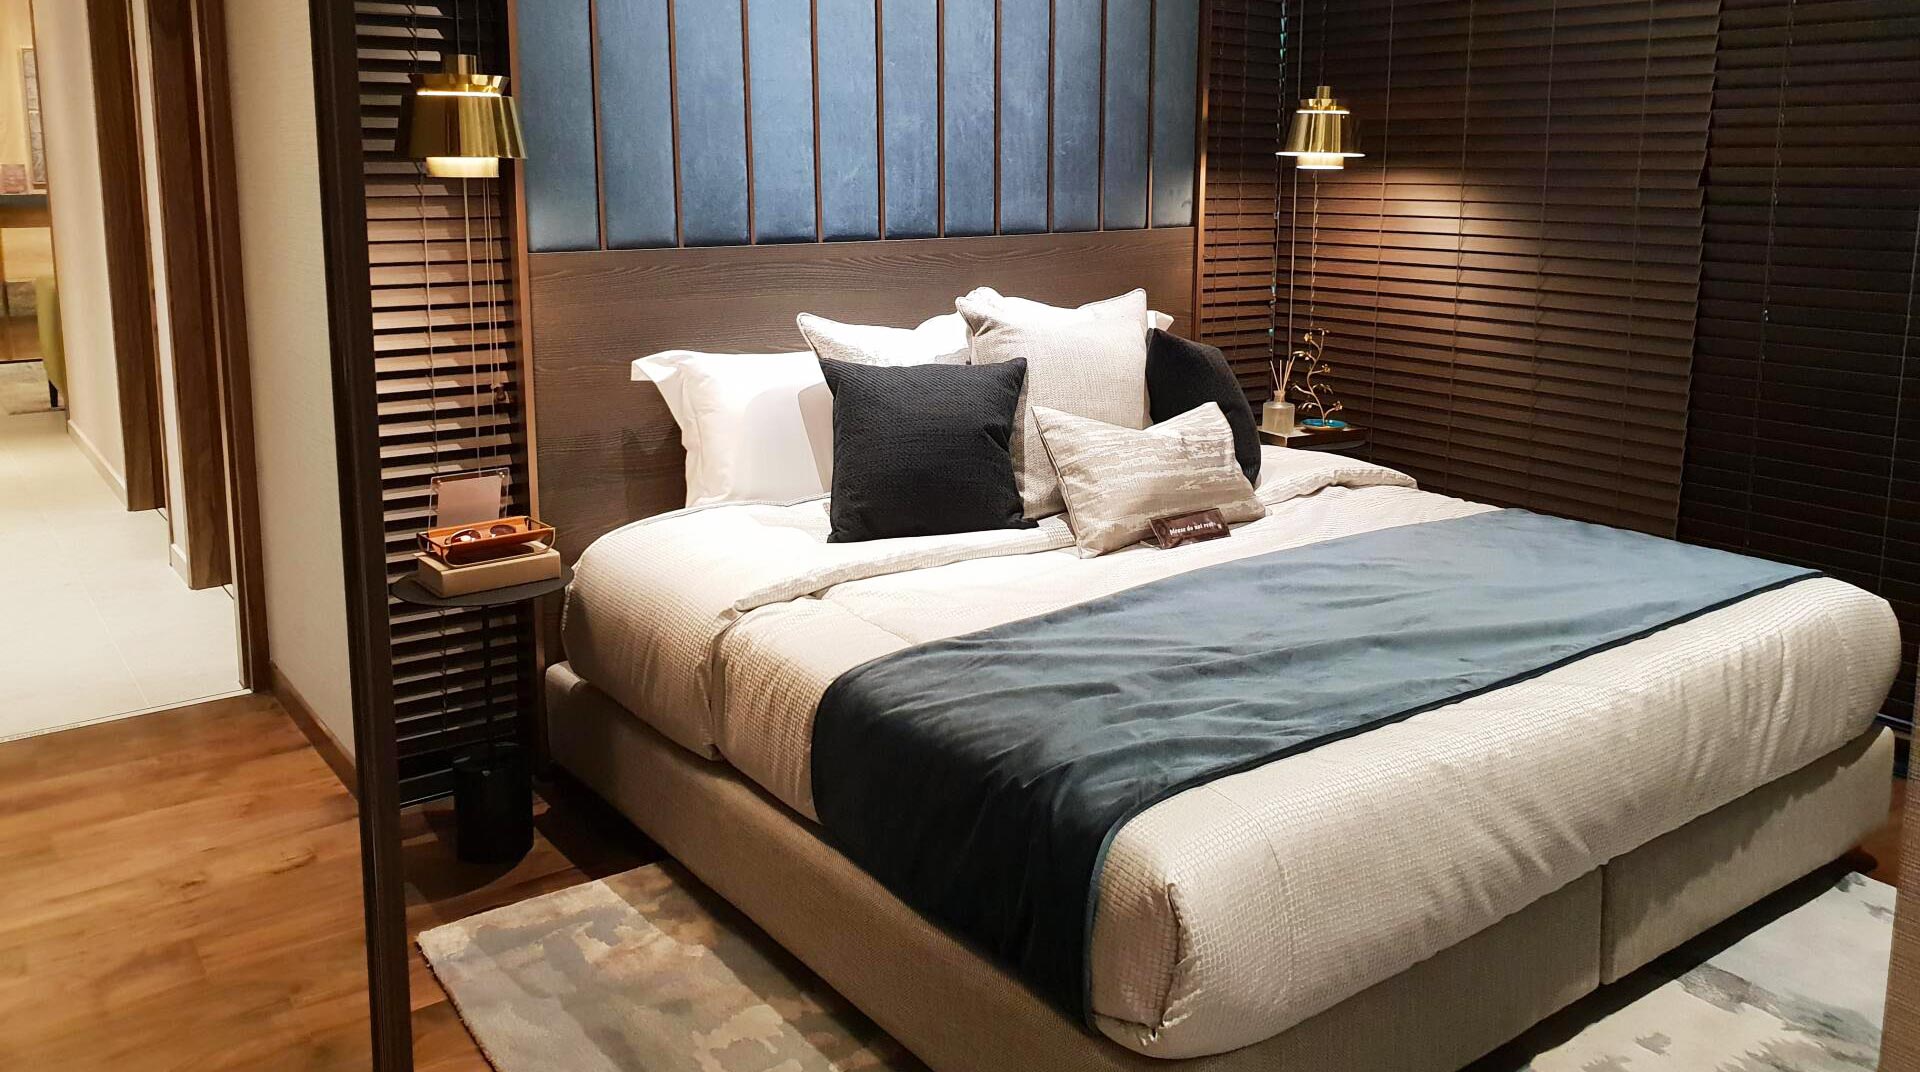 Un lit et sa tête de lit dans un intérieur de chambre au style boisé